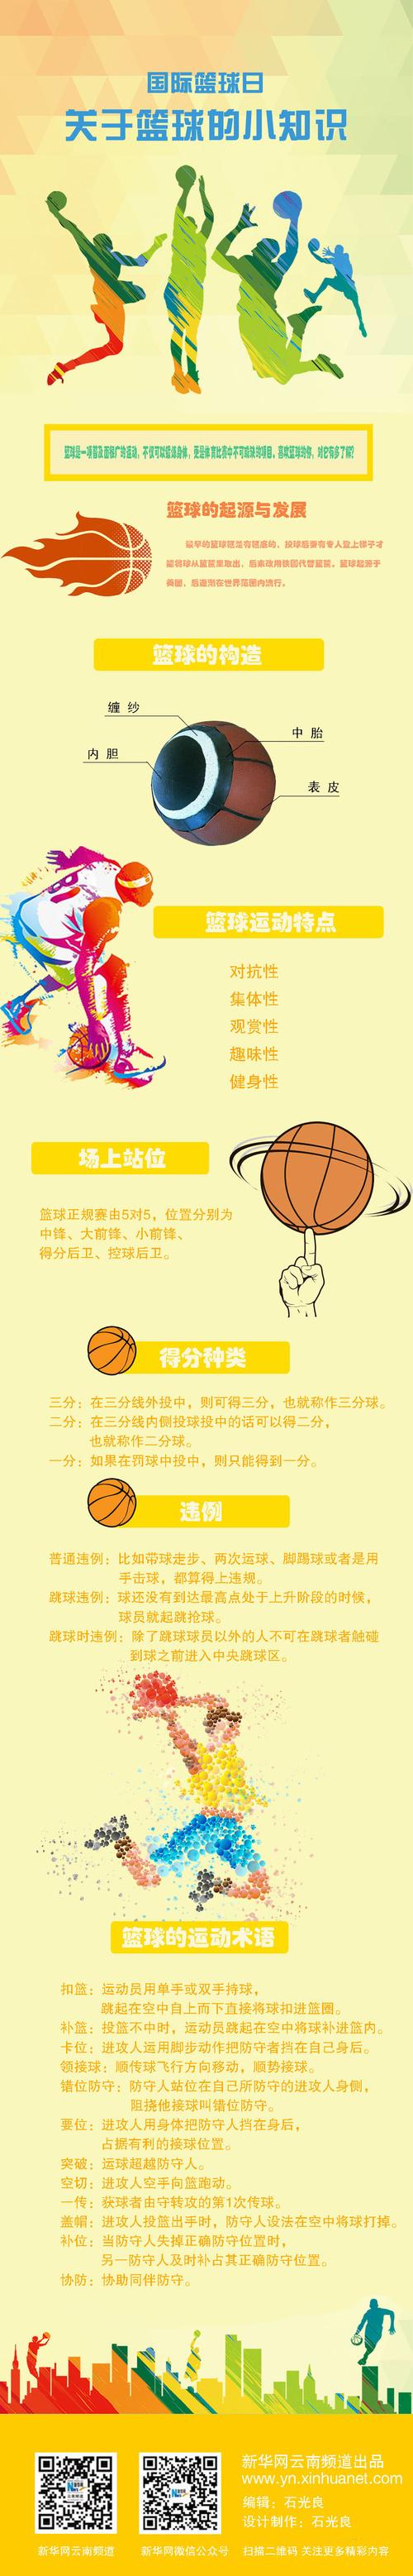 篮球资讯及技巧